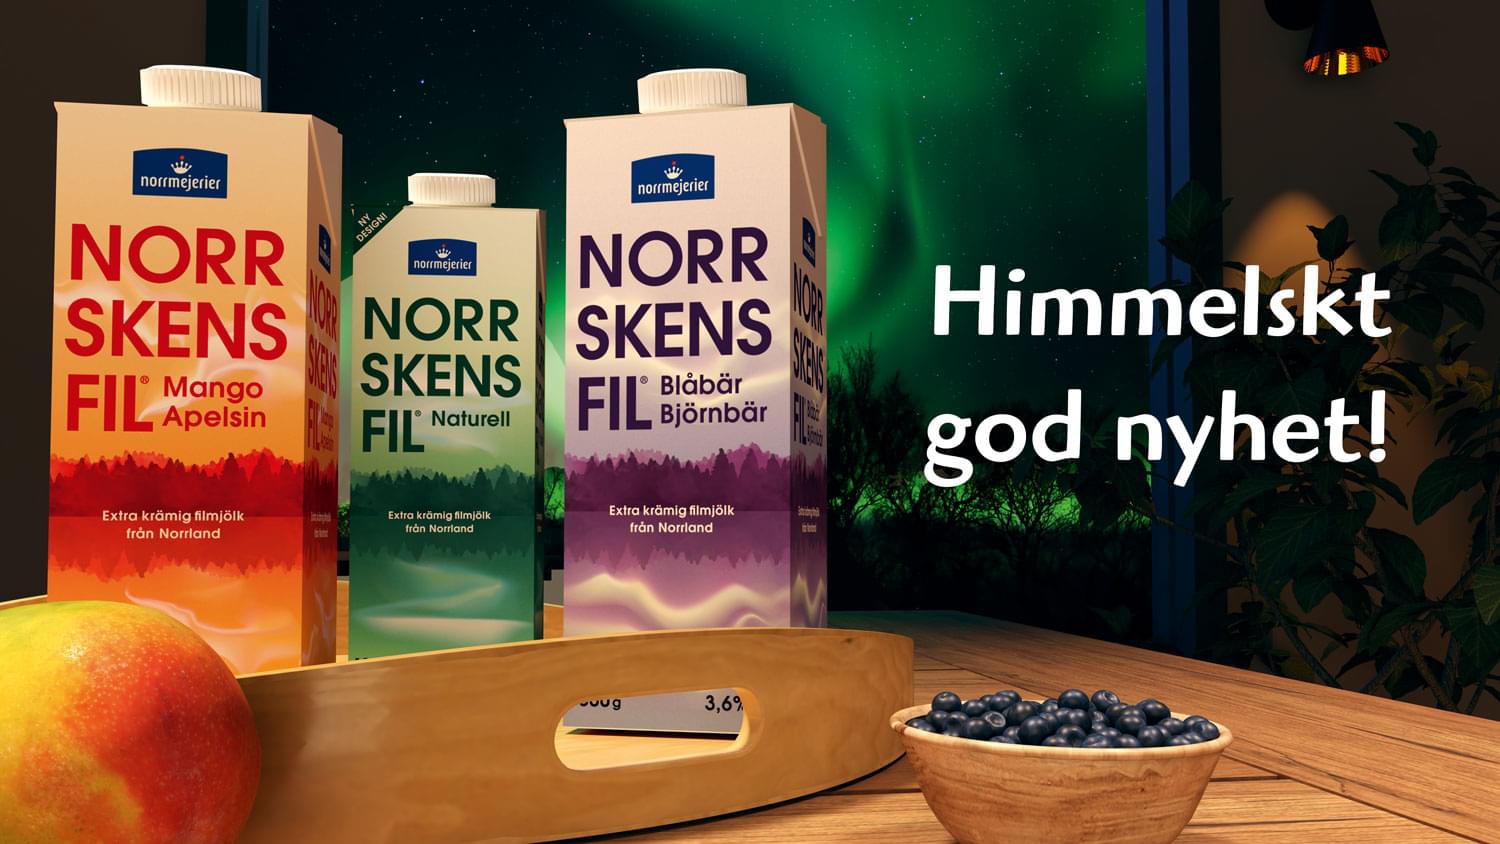 Himmelsk god nyhet – Norrskensfil®